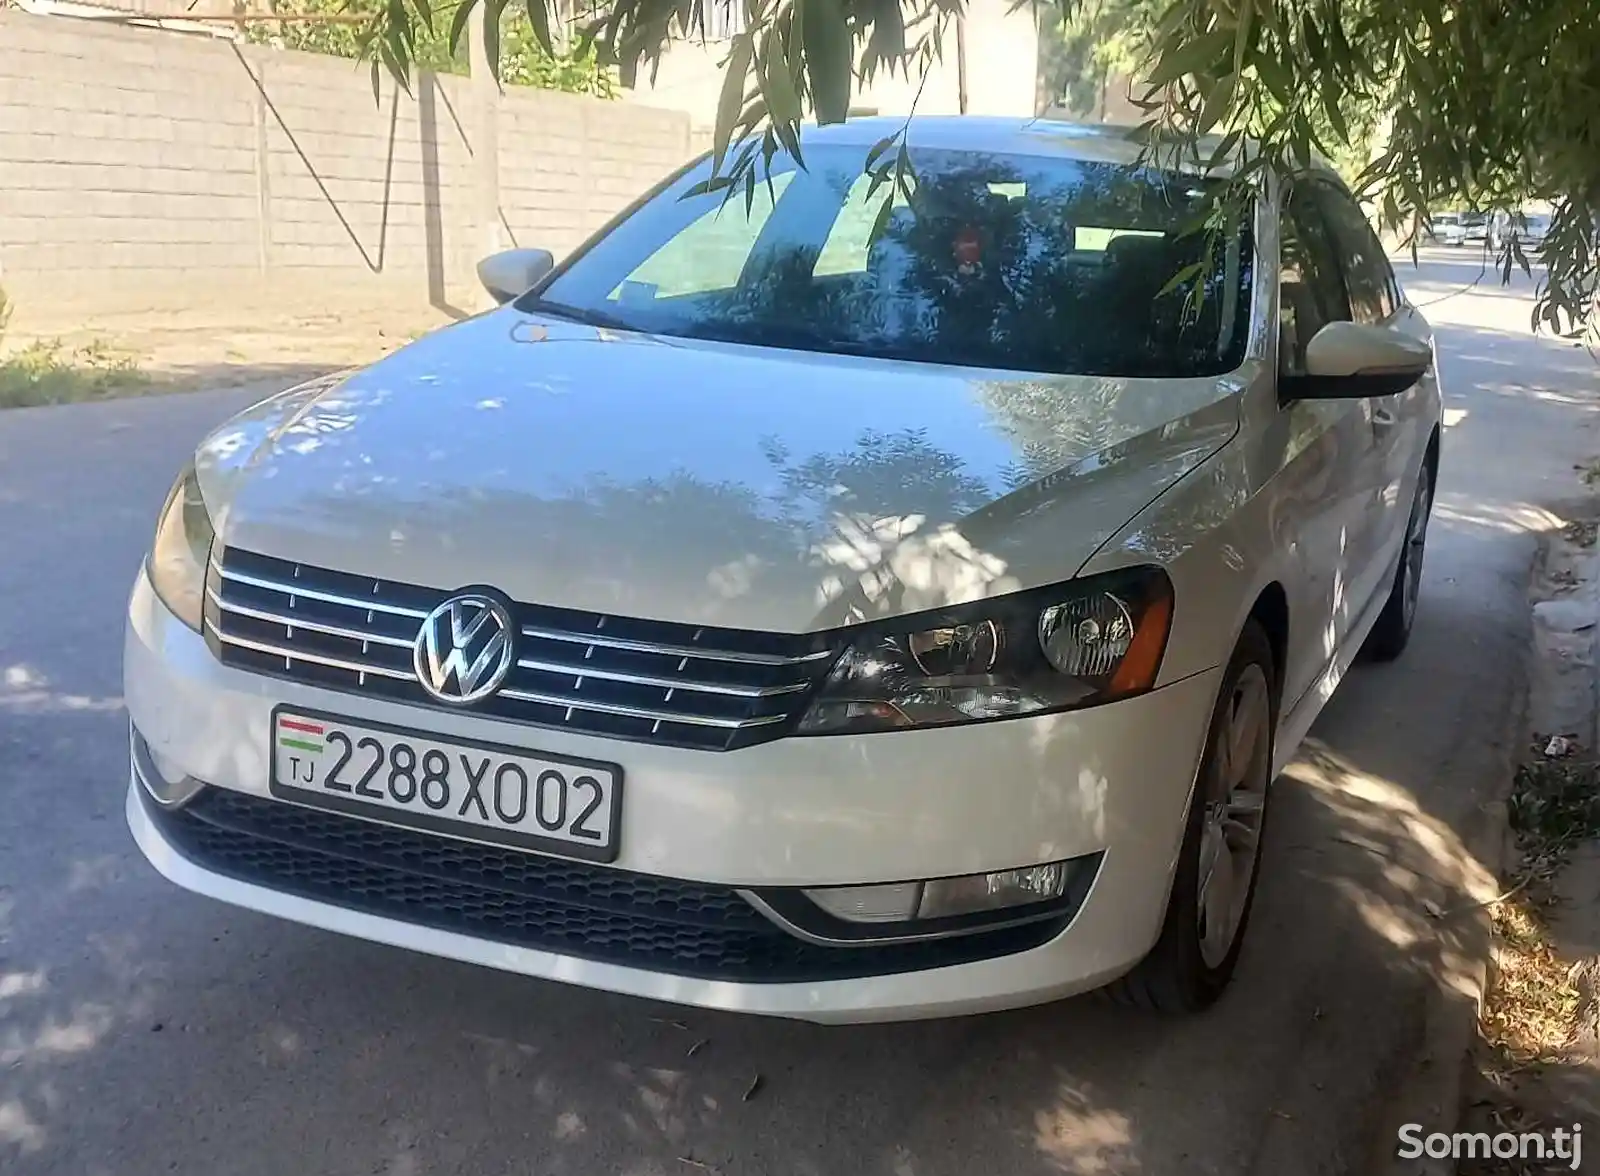 Volkswagen Passat, 2013-2